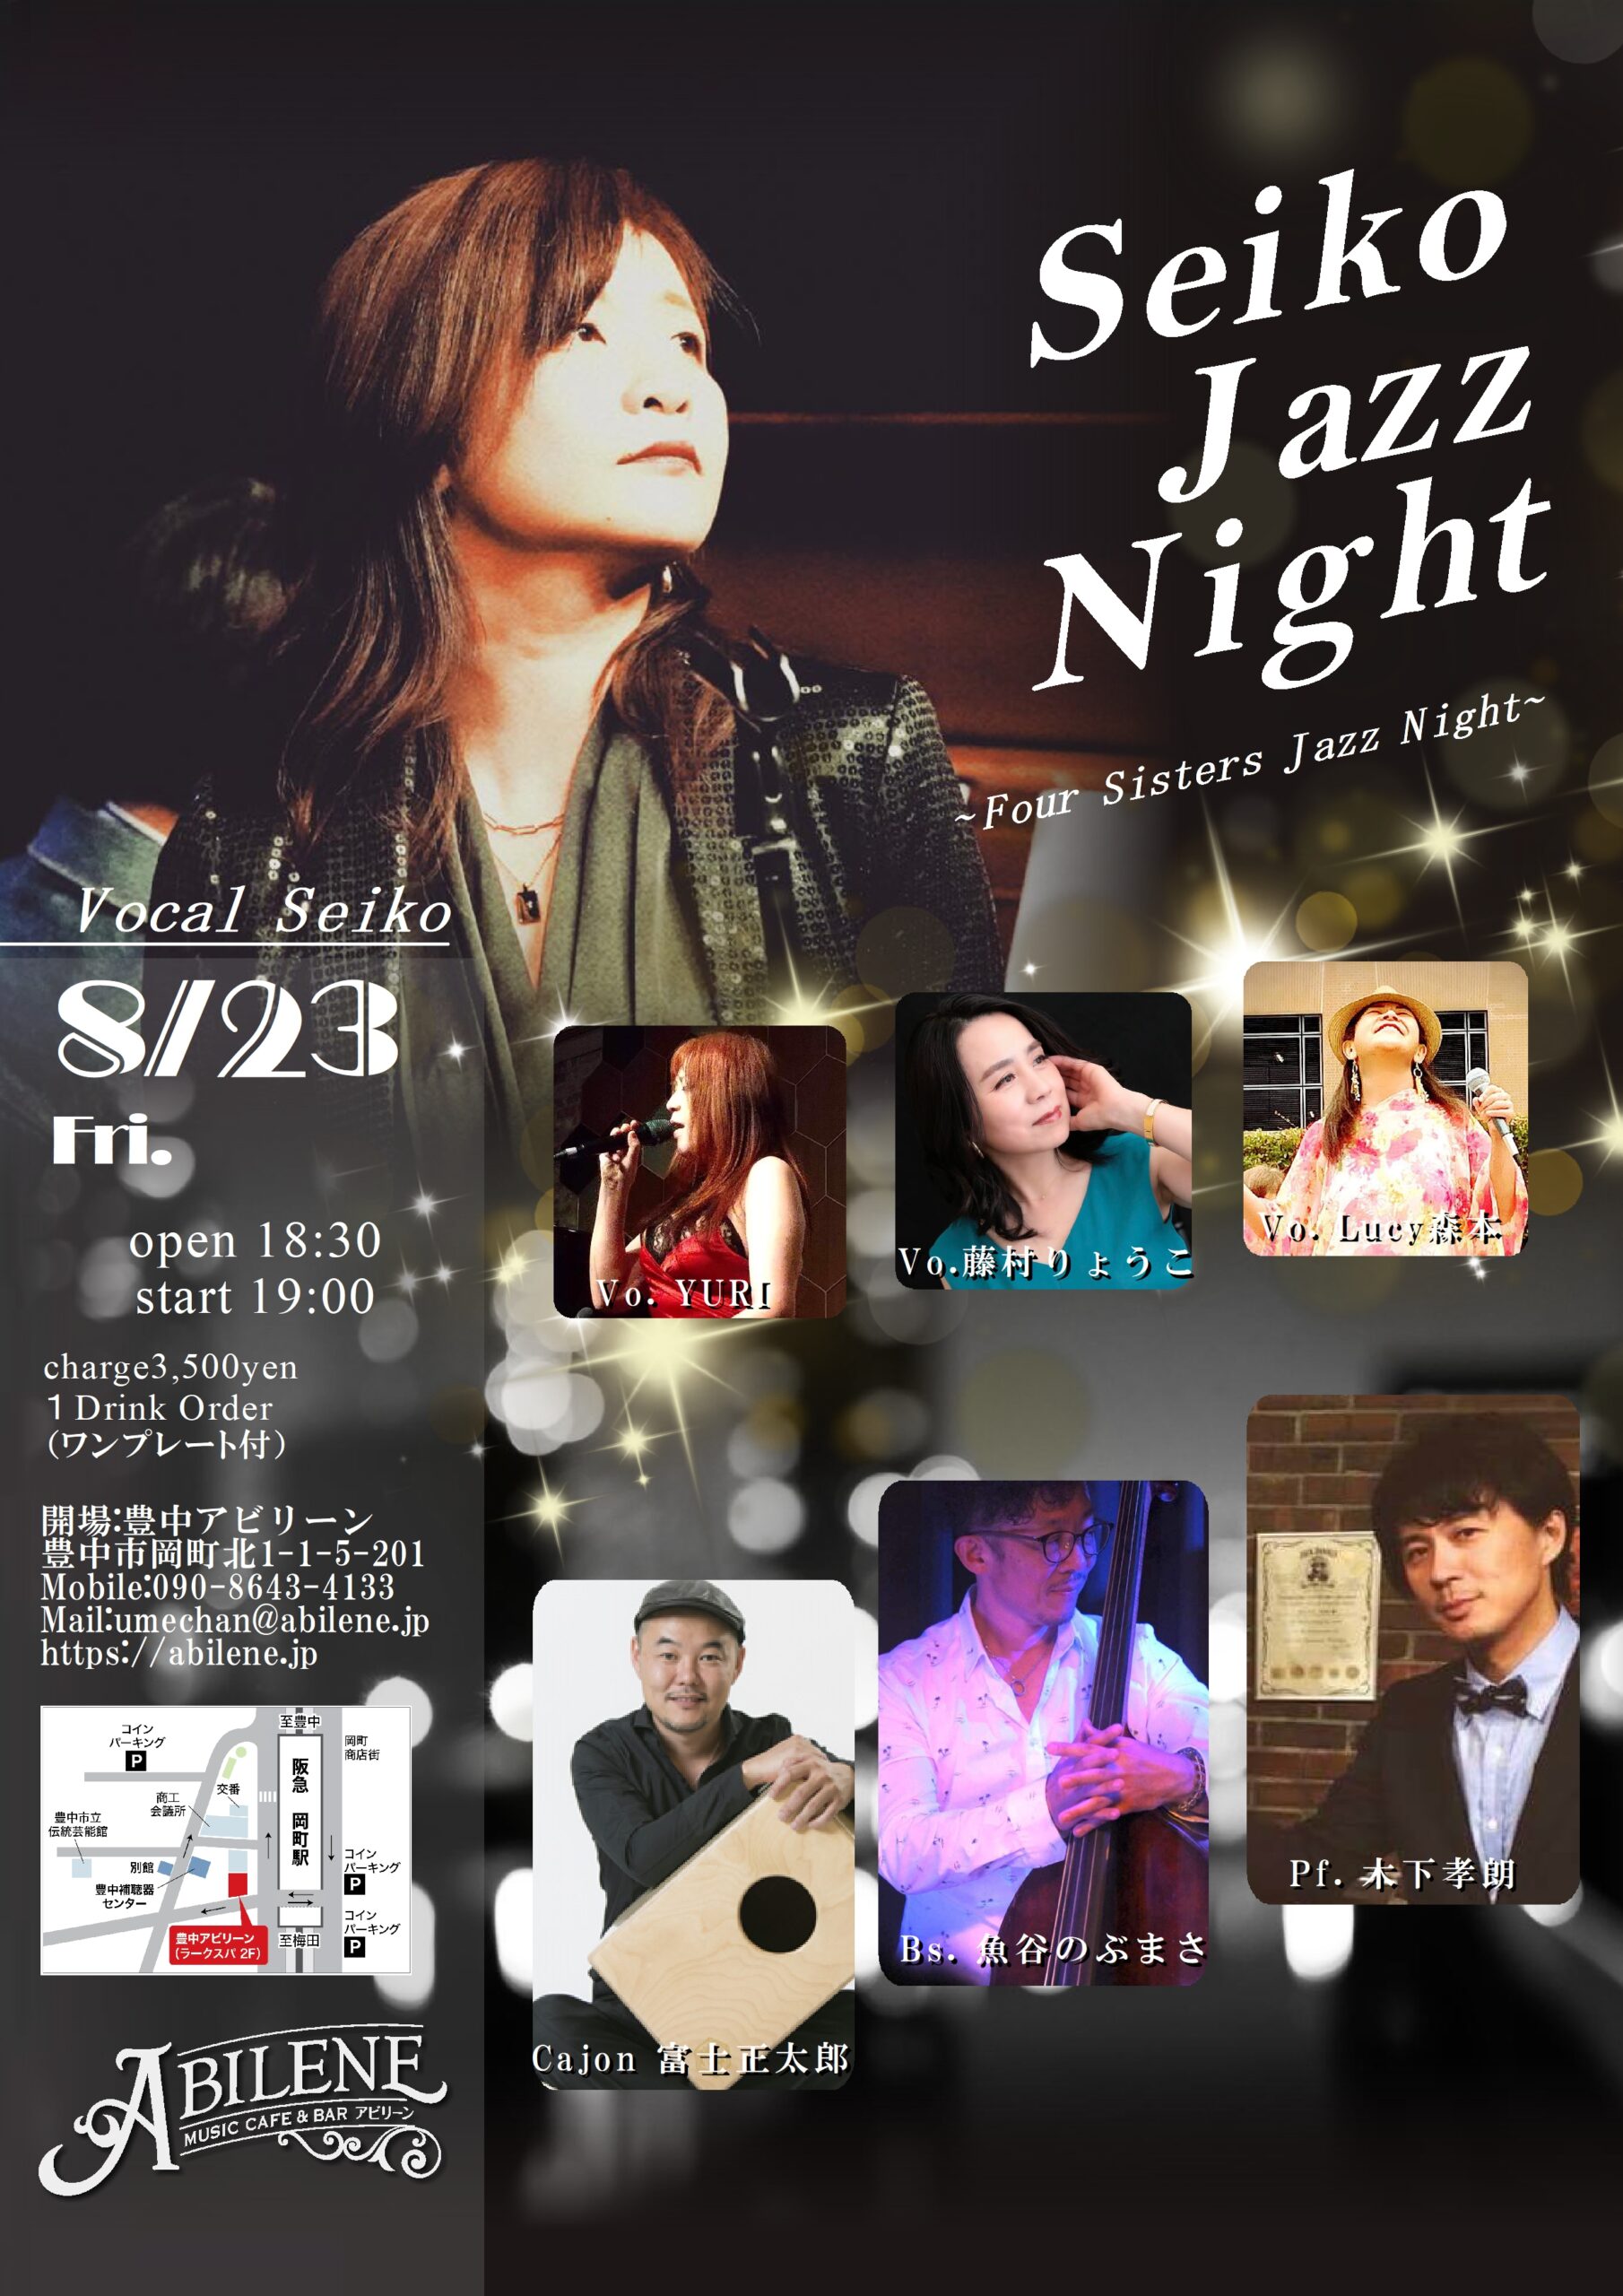 Seiko JAZZ NIGHT ~Four Sisters Jazz Night~